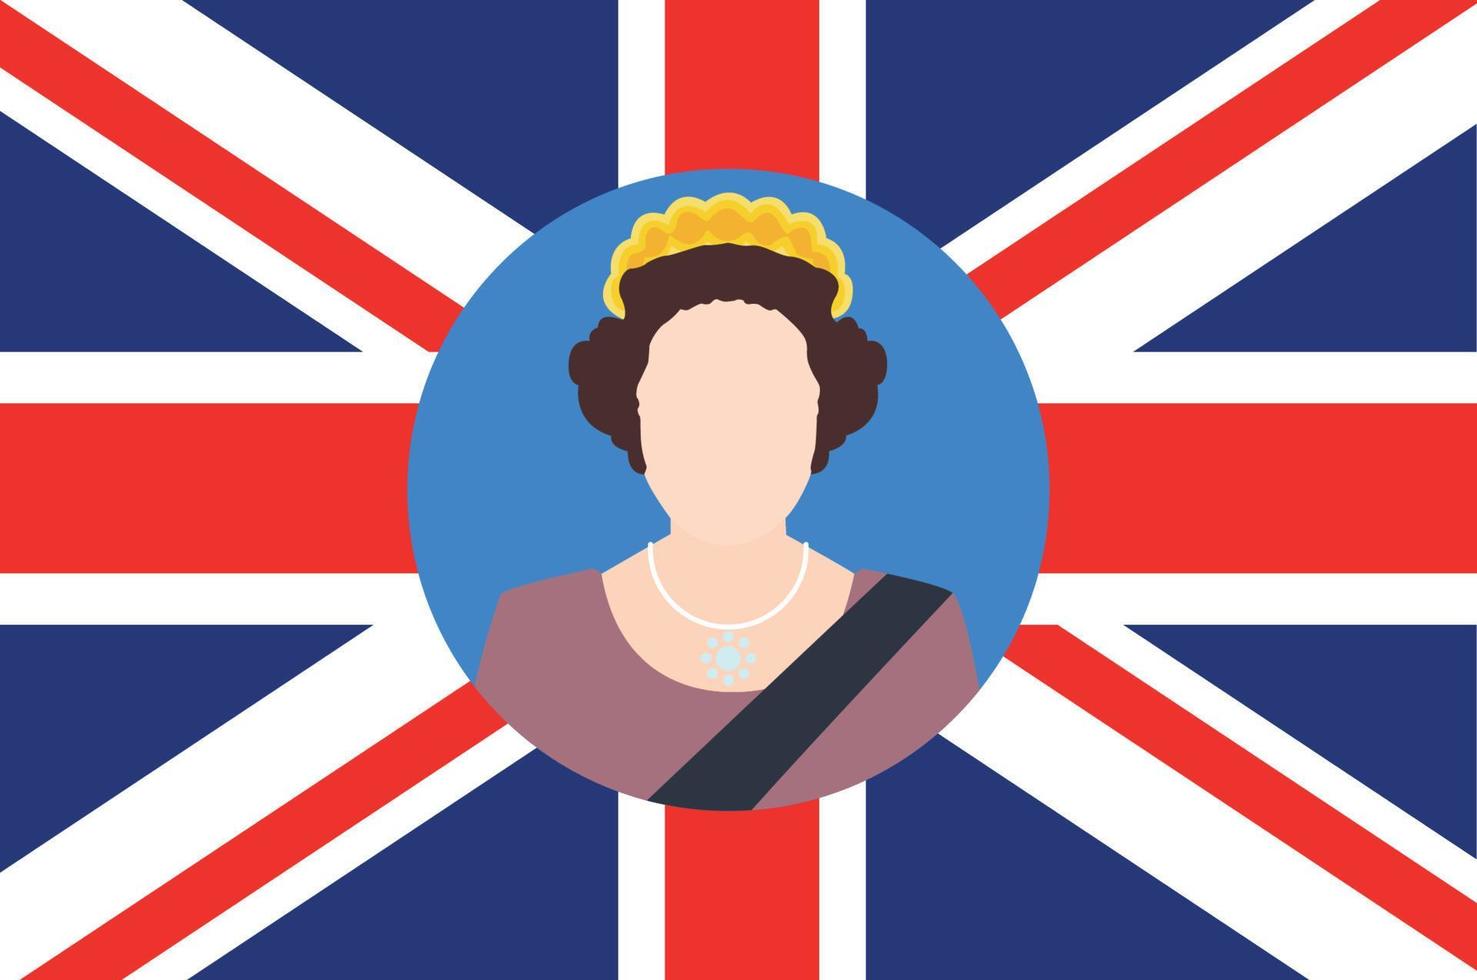 Elizabeth koningin 1926 2022 gezicht portret met Brits Verenigde koninkrijk vlag nationaal Europa embleem icoon vector illustratie abstract ontwerp element